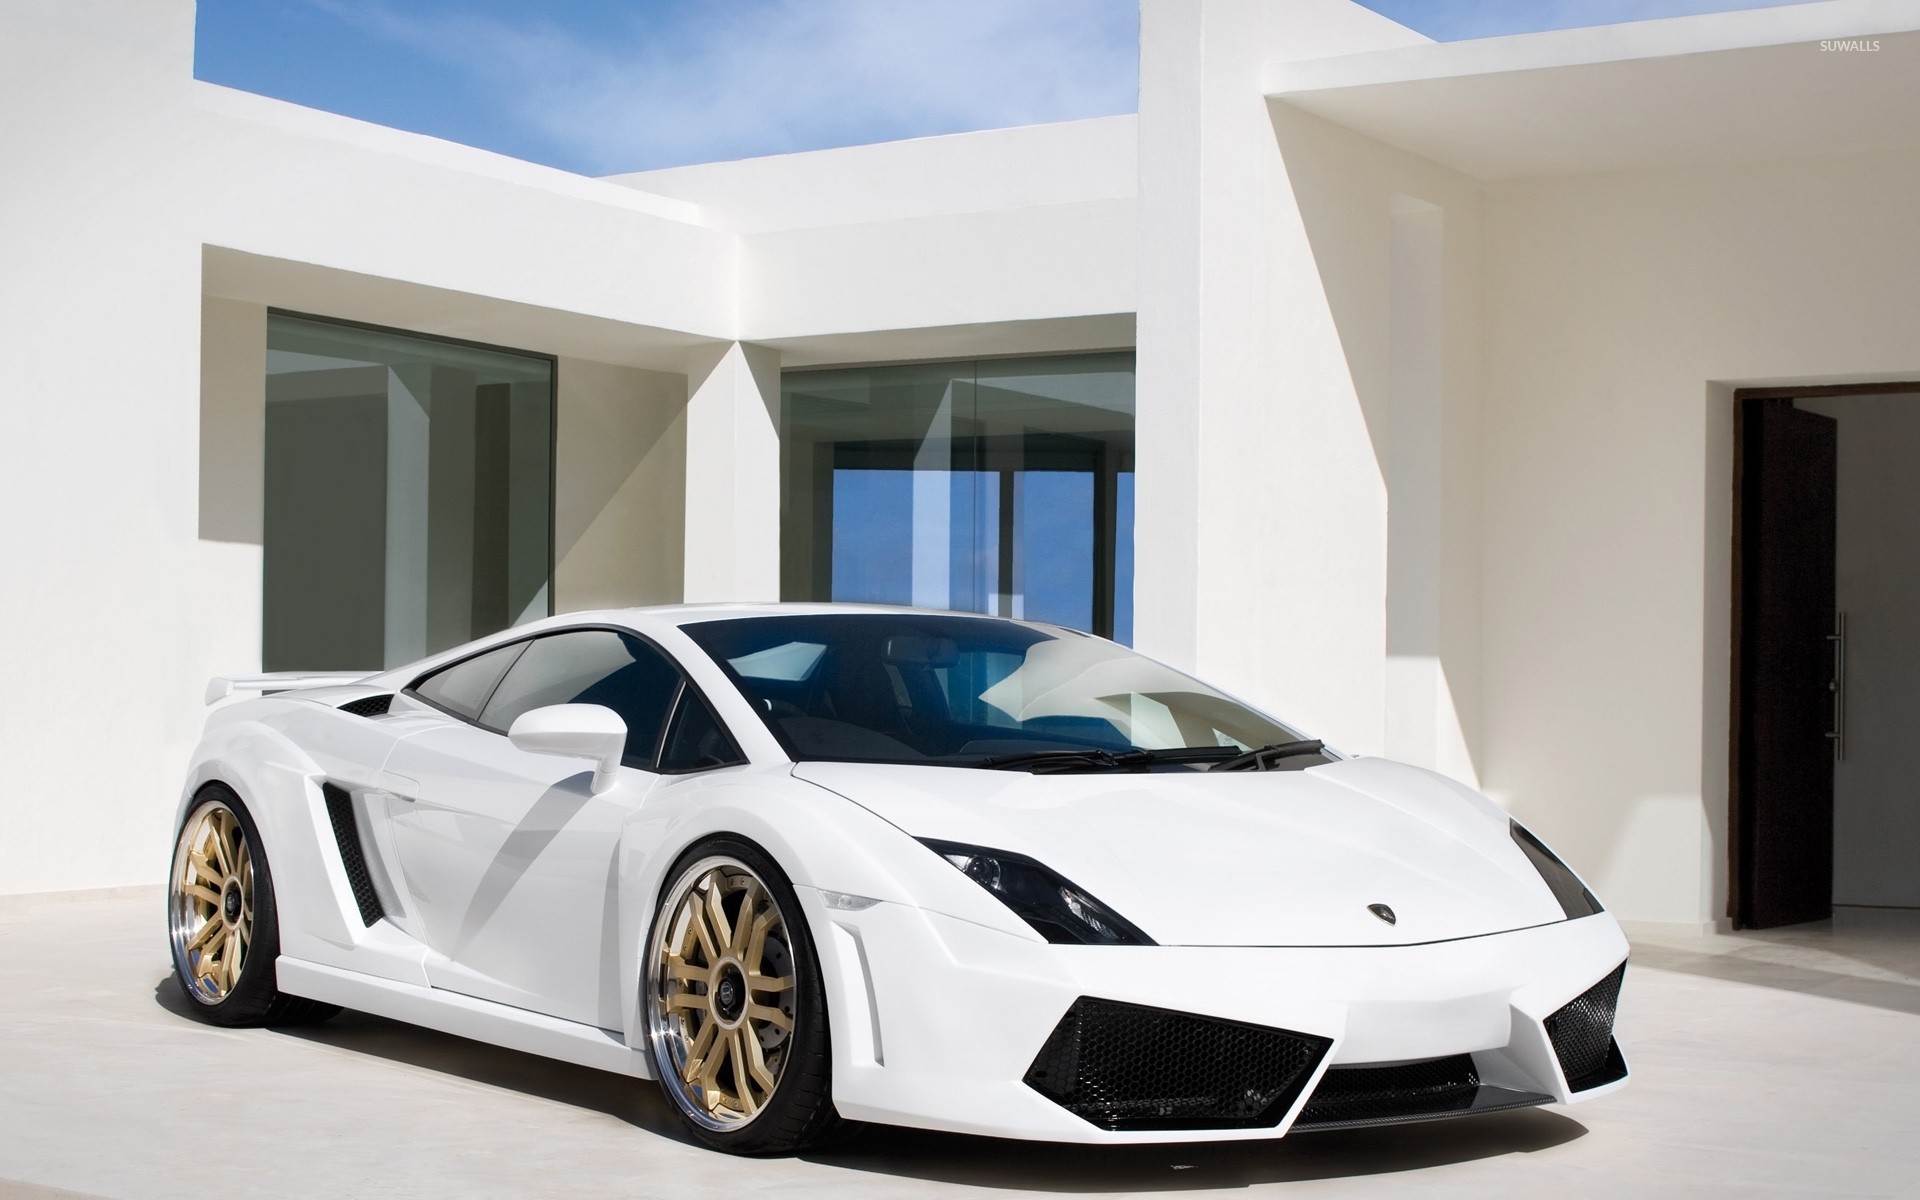 White Lamborghini Gallardo In Front Of A Mansion Wallpaper Car